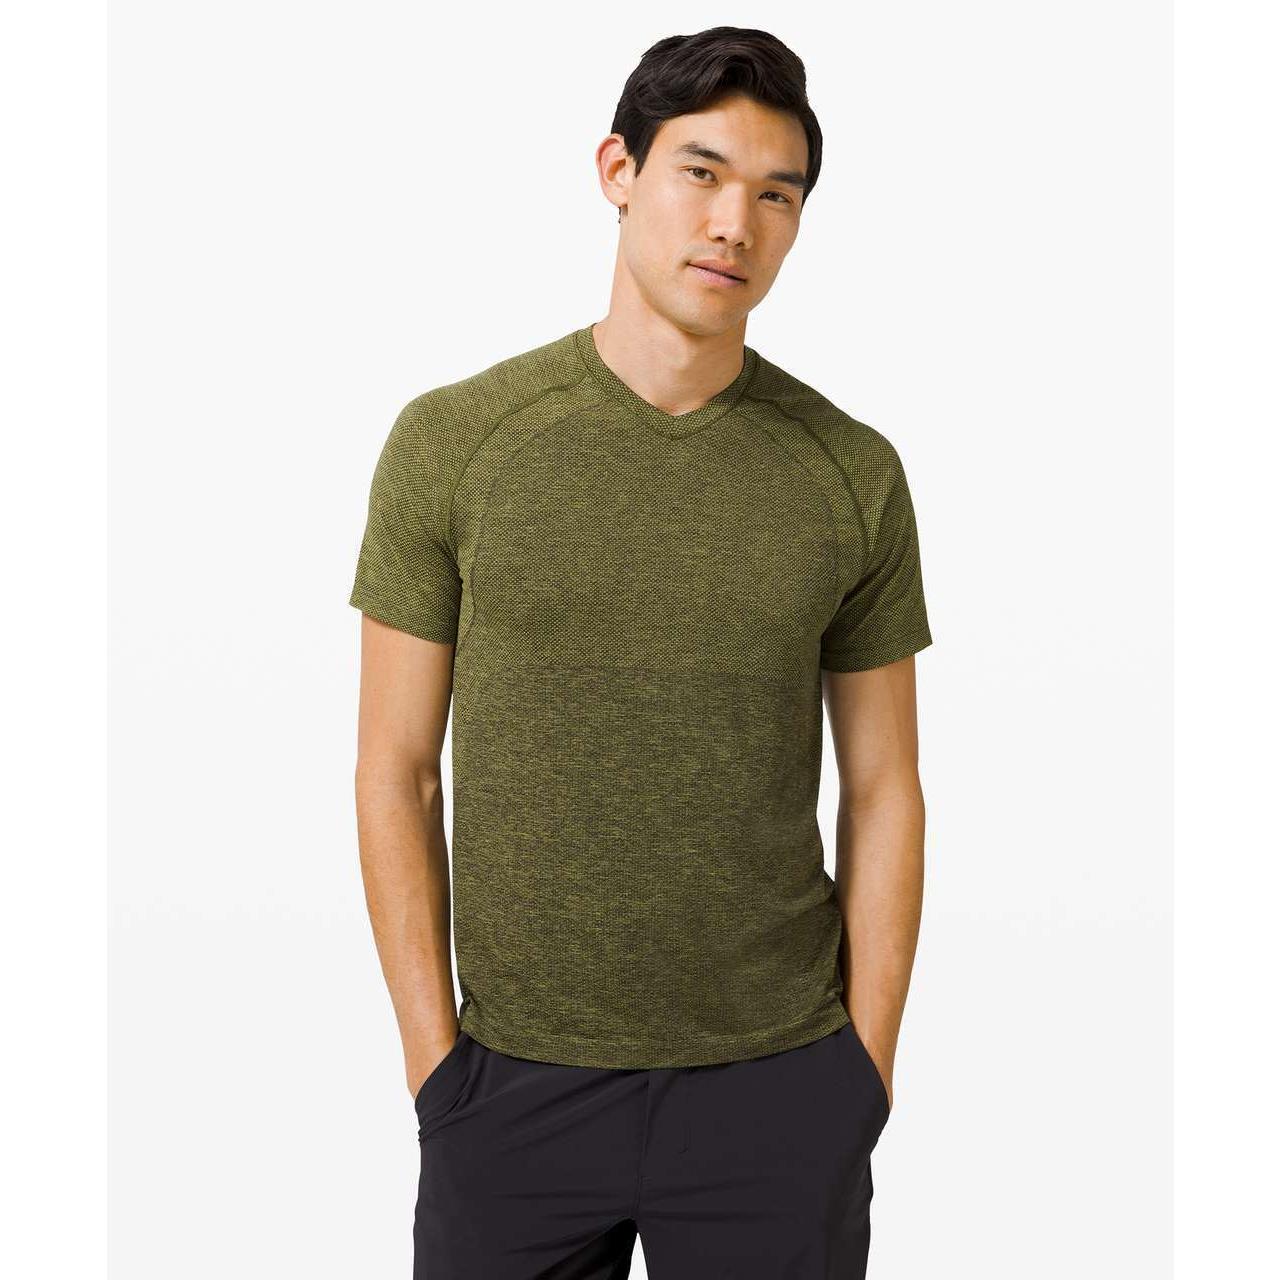 Lululemon Metal Vent Tech Short Sleeve Shirt 2.0 Bronz Green L